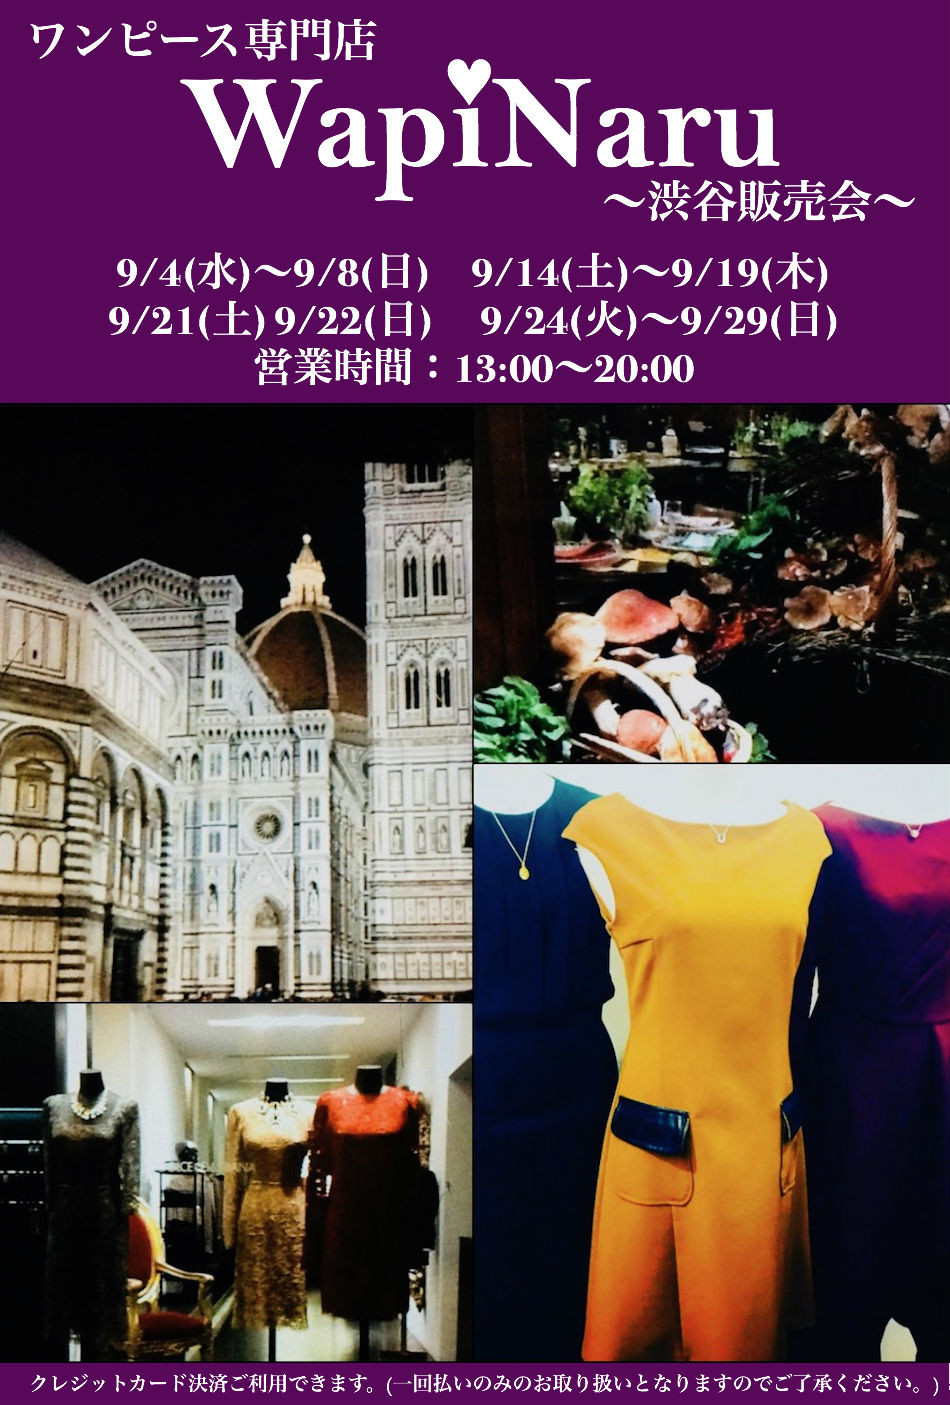 2019年9月 渋谷販売会